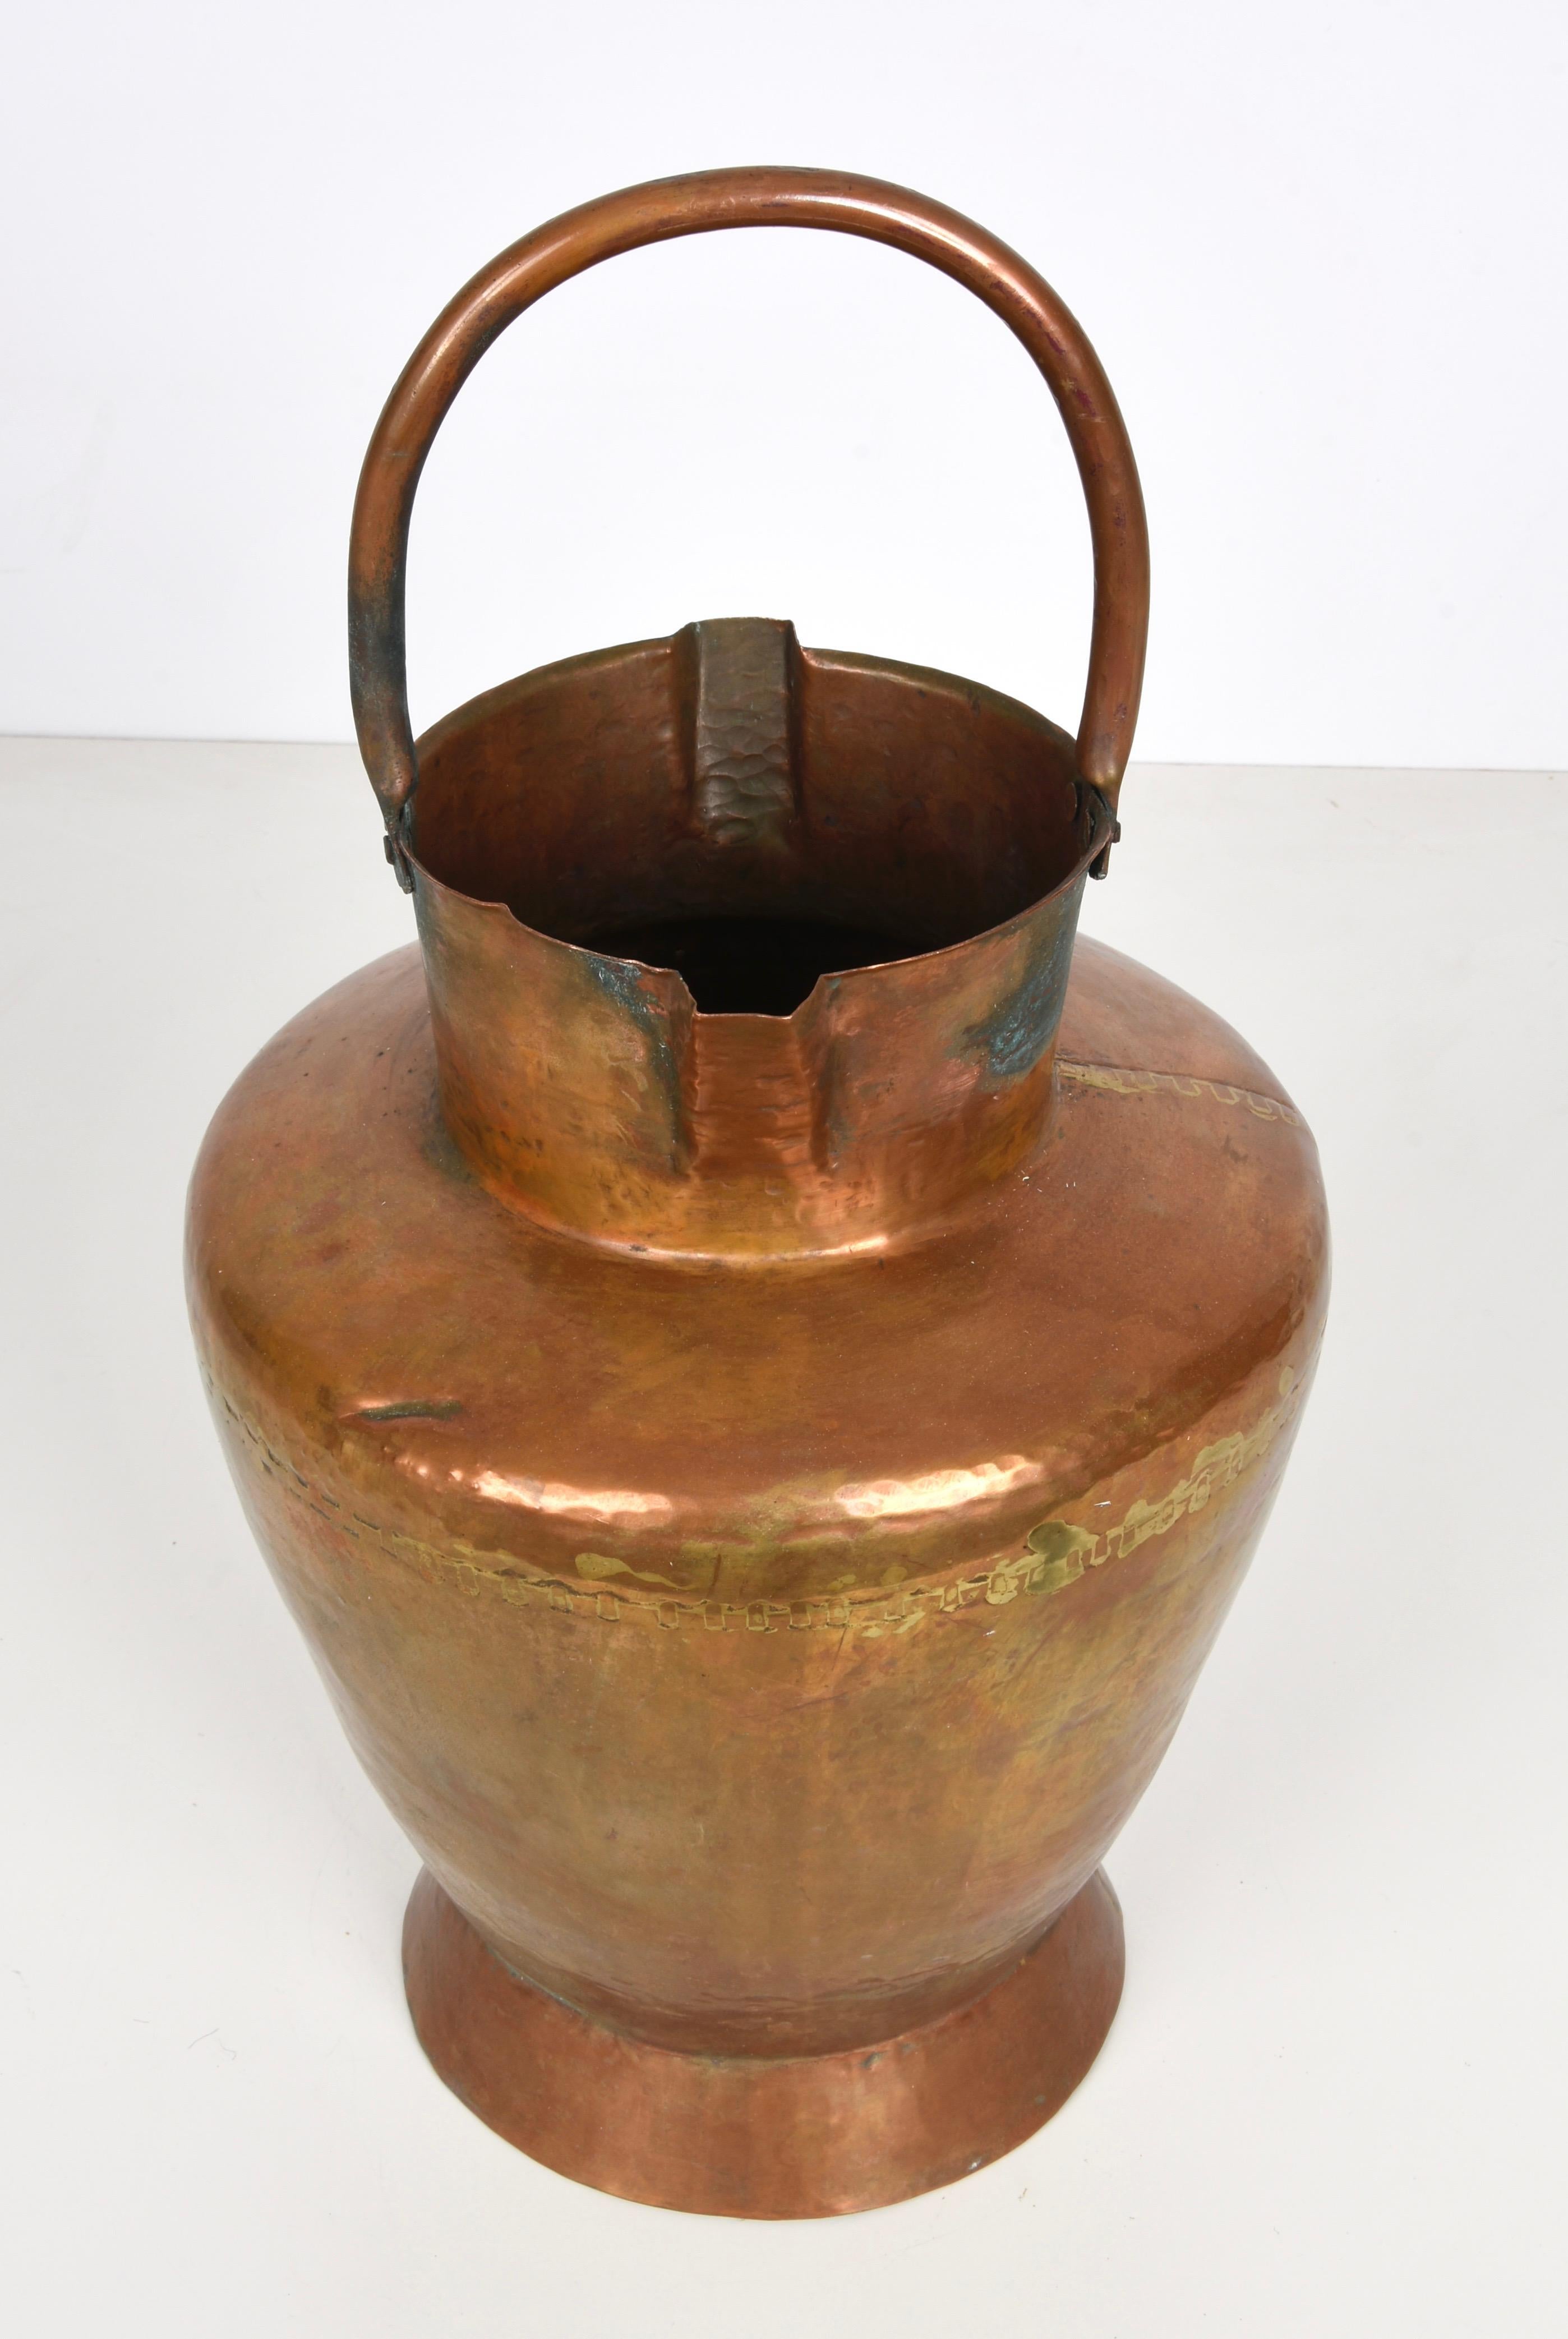 Erstaunliche toskanische Vase Mezzina in Kupfer, 48 cm Höhe. Dieses wunderschöne Stück wurde in den 1930er Jahren in Italien entworfen.

Diese große Vase ist erstaunlich, da sie zwei Ausgüsse und einen einzigen Henkel hat. Erstaunliche Produktion